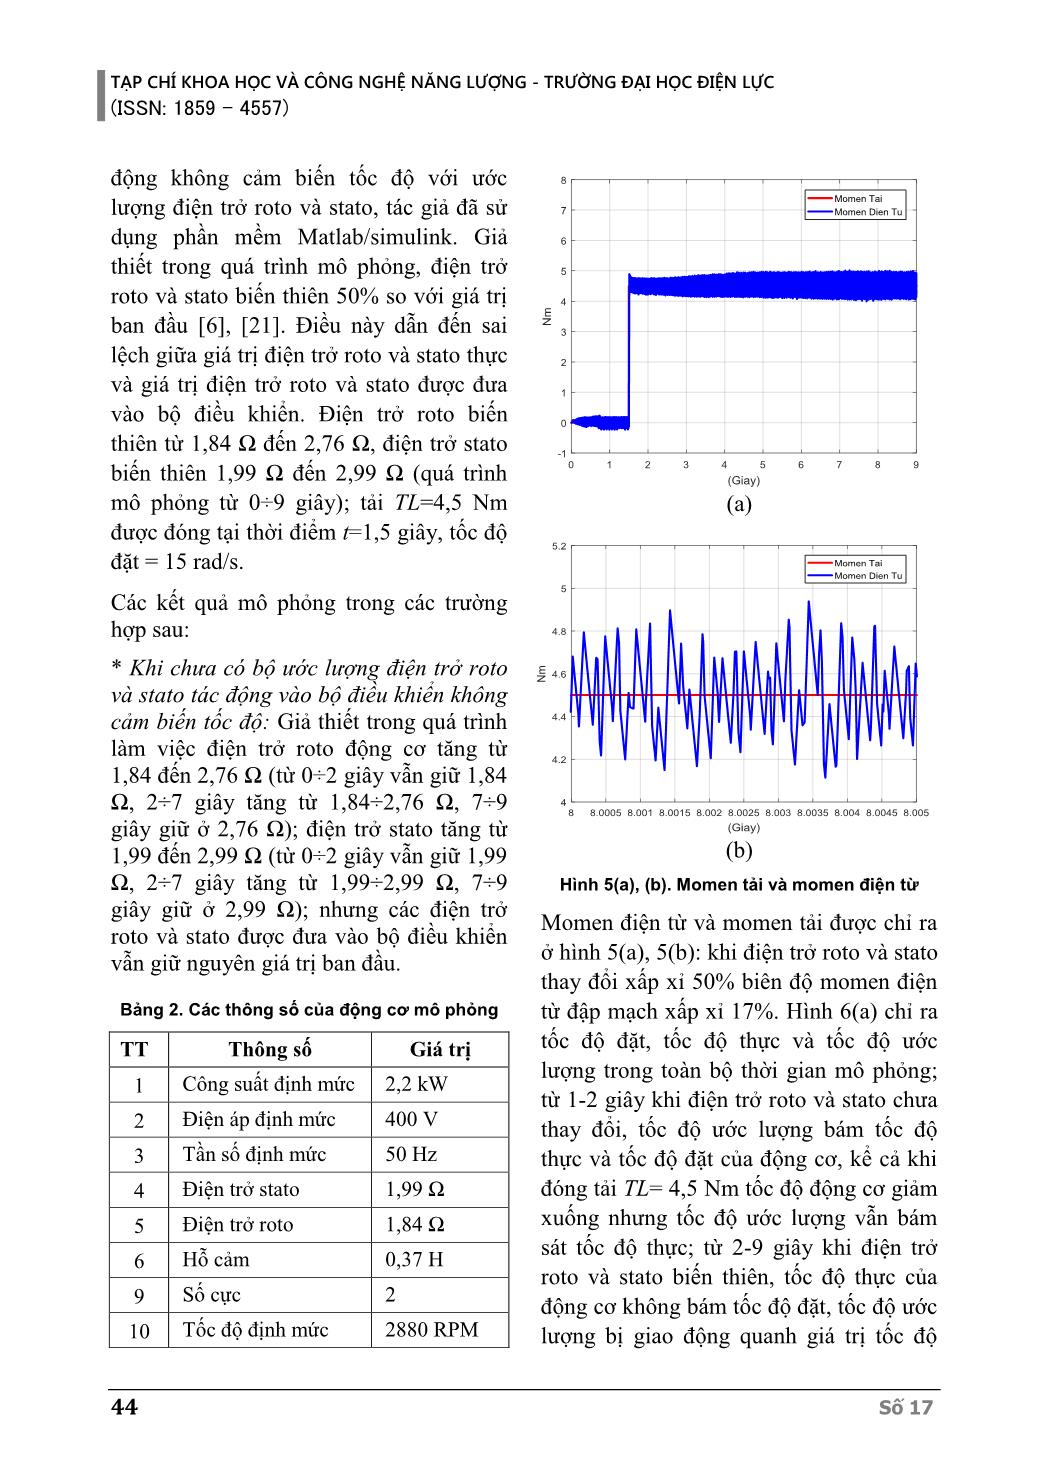 Thuật toán học Nơron sửa đổi để ước lượng điện trở Roto và Stato khi đang hoạt động cho truyền động động cơ không đồng bộ không cảm biến tốc độ trang 6